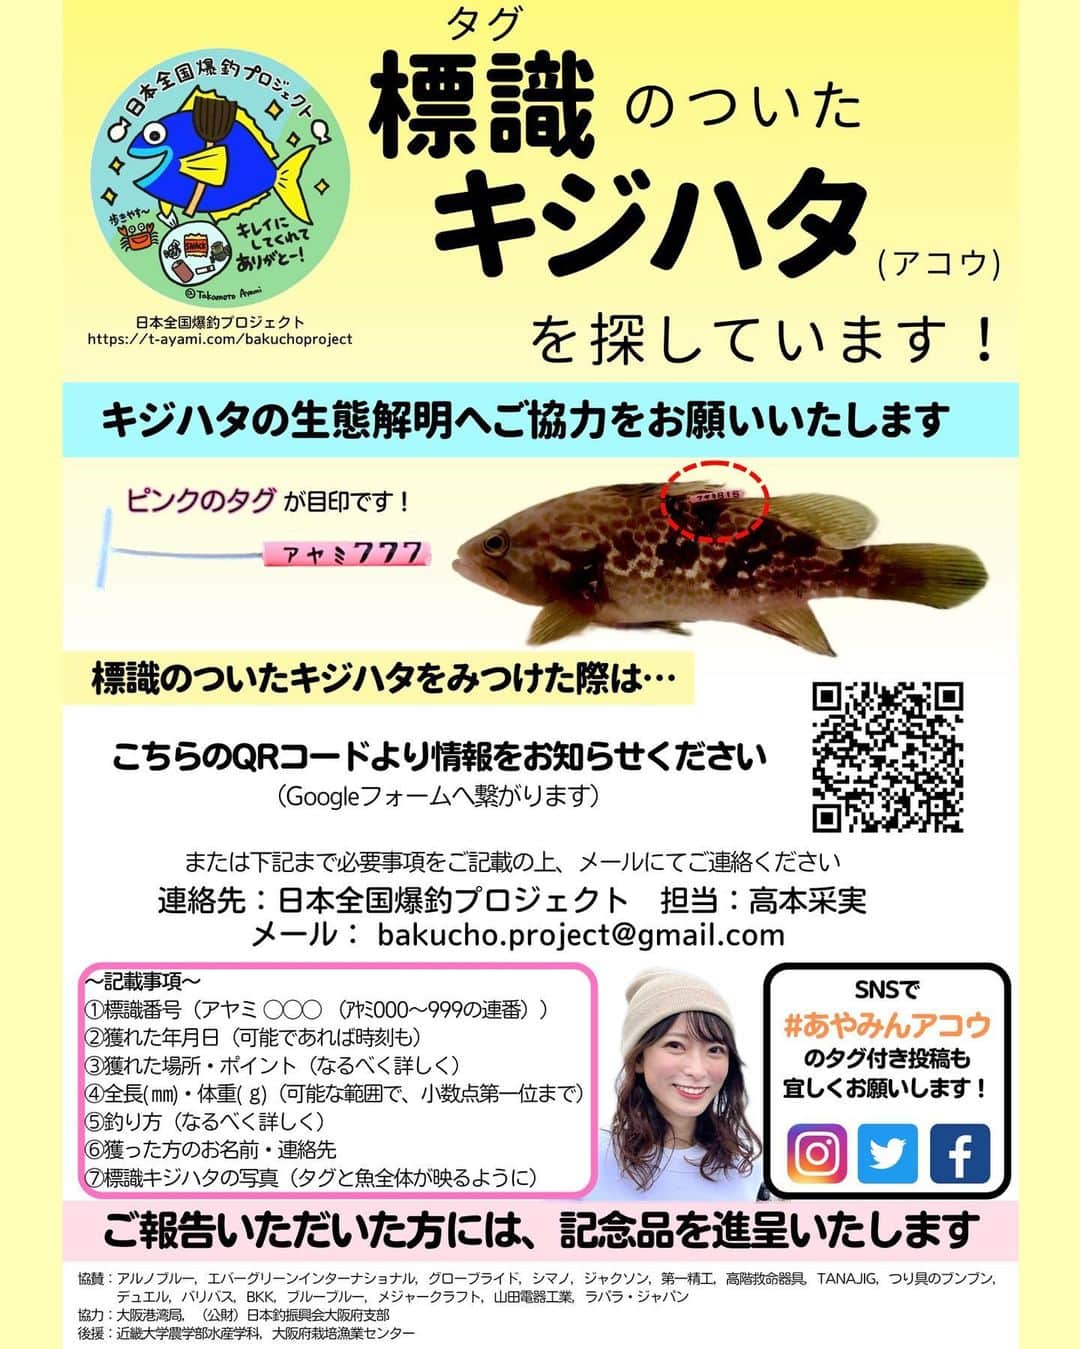 高本采実のインスタグラム：「🌏 🐟日本全国爆釣プロジェクト🐟 ＼「あやみんアコウ」を大阪湾へ放流しました！／  2022年4月より、釣りが好きな皆さんと一緒にシーサイドコスモで清掃活動を続けてきました。 その際に稚魚放流のため皆さんより募らせていただいたご寄付がようやく形となりました！  キジハタ稚魚：640匹（¥211,200） タグ：1000本（¥37,092） （詳細：第12回清掃活動の収支報告書）  今回、稚魚放流に参加させていただいた (公財)日本釣振興会 大阪府支部のキジハタ360匹にもタグを打たせていただき、 合計1000匹のキジハタにタグを打ちました。  今頃どこまで泳いで元気に育っているのか、 どれくらい大きくなっているのか、 気になることがたくさんです🥹✨ とにかく元気に過ごしてくれてたらいいなと願いつつ、 あやみんアコウと再会できる日を楽しみにしています🐟🤍 みなさんからの釣果報告もすっごく楽しみにしています！✨ 釣れたら是非 「 #あやみんアコウ 」のタグ付け投稿をお願いいたします🥺🐟  ●タグ打ち（2023.8.22） 大阪府岬町にあります栽培事業場にて、 母校である近畿大学農学部水産学科の学生さんと先生ご協力の元、 キジハタ稚魚1000匹にピンクのタグ打ち、サイズ測定(全長・体重)を行いました。  ●放流（2023.8.24） 公益財団法人日本釣振興会大阪府支部と大阪府釣り団体協議会による大阪湾への稚魚放流に、日本全国爆釣プロジェクトスタッフみんなと参加させていただきました。 今回、(公財)日本釣振興会 大阪府支部へご寄付しまして、日本全国爆釣プロジェクトからもキジハタ稚魚を放流いたしました。 大阪湾(北港〜南港)にてピンクのタグが付いた1000匹のあやみんアコウが大阪湾へと放流されました。  ●キジハタ生態解明へ向けて 釣り人のみなさんにご協力のお願いです！ 今回放流したピンクの標識がついたキジハタが釣れた際は、画像1枚目を参考に情報提供をお願いいたします🐟 皆さんからいただいた情報が、キジハタの生態解明へ繋がります。 またあやみんアコウが釣れた際は、なるべく速やかにリリースをお願いいたします。  ＿＿＿＿＿＿＿＿＿＿＿＿＿＿＿＿＿＿＿＿ 〜日本全国爆釣プロジェクト〜  協賛：アルノブルー @arunoblue 、エバーグリーンインターナショナル @evergreen_saltwaterfishing 、グローブライド @daiwa_japan 、シマノ @shimanofishing_jp 、ジャクソン @jacksonlure 、第一精工 @daiichiseiko_official 、高階救命器具 @bluestorm.official 、TANAJIG @tanajig1091 、つり具のブンブン @turiguno_bunbun 、デュエル @duel_yozuri 、バリバス  @varivas_japan 、BKK @bkk_japan 、ブルーブルー @blueblue_fishing 、メジャークラフト @majorcraft.official 、山田電器工業 @hapyson_official 、ラパラ・ジャパン @rapalajapan   協力：大阪港湾局、(公財)日本釣振興会大阪府支部  後援：近畿大学農学部水産学科、大阪府栽培漁業センター ＿＿＿＿＿＿＿＿＿＿＿＿＿＿＿＿＿＿＿＿  〜日本全国爆釣プロジェクト スタッフ〜 くわがた心 @kokoro_kuwagata_888  ただただし @tadatadasshi  さきやん @sakiyan_318  モンスーン T@TSU @tatsu_bigt  構成作家 上村茶屋 @chaya01up  下川はじメロディ @hajimeshimokawa   これからもずっと釣りが楽しめる環境作りをしていけるよう頑張っていきます！🐟🌱  ______________________________________ 🐟日本全国爆釣プロジェクト🐟とは？  これからもずっと釣りが楽しめる環境作りを目的とし、その一環として清掃活動と稚魚放流を目指したプロジェクト。 2022年4月よりスタートしました！ ついに今年2023年8月！キジハタ稚魚をタグ打ち&大阪湾へ放流いたしました。  . . . . .  #日本全国爆釣プロジェクト #大阪港 #南港 #北港 #清掃活動 #朝活 #シーサイドコスモ #コスモスクエア #ゴミ拾い #ボランティア #キジハタ #あやみんアコウ #稚魚放流 #根魚 #ロックフィッシュ #rockfish #アコウ #アコウ釣り #魚好き #釣り好き #アングラー #fishinggirl #高本采実 #あやみん #ayamistagram」